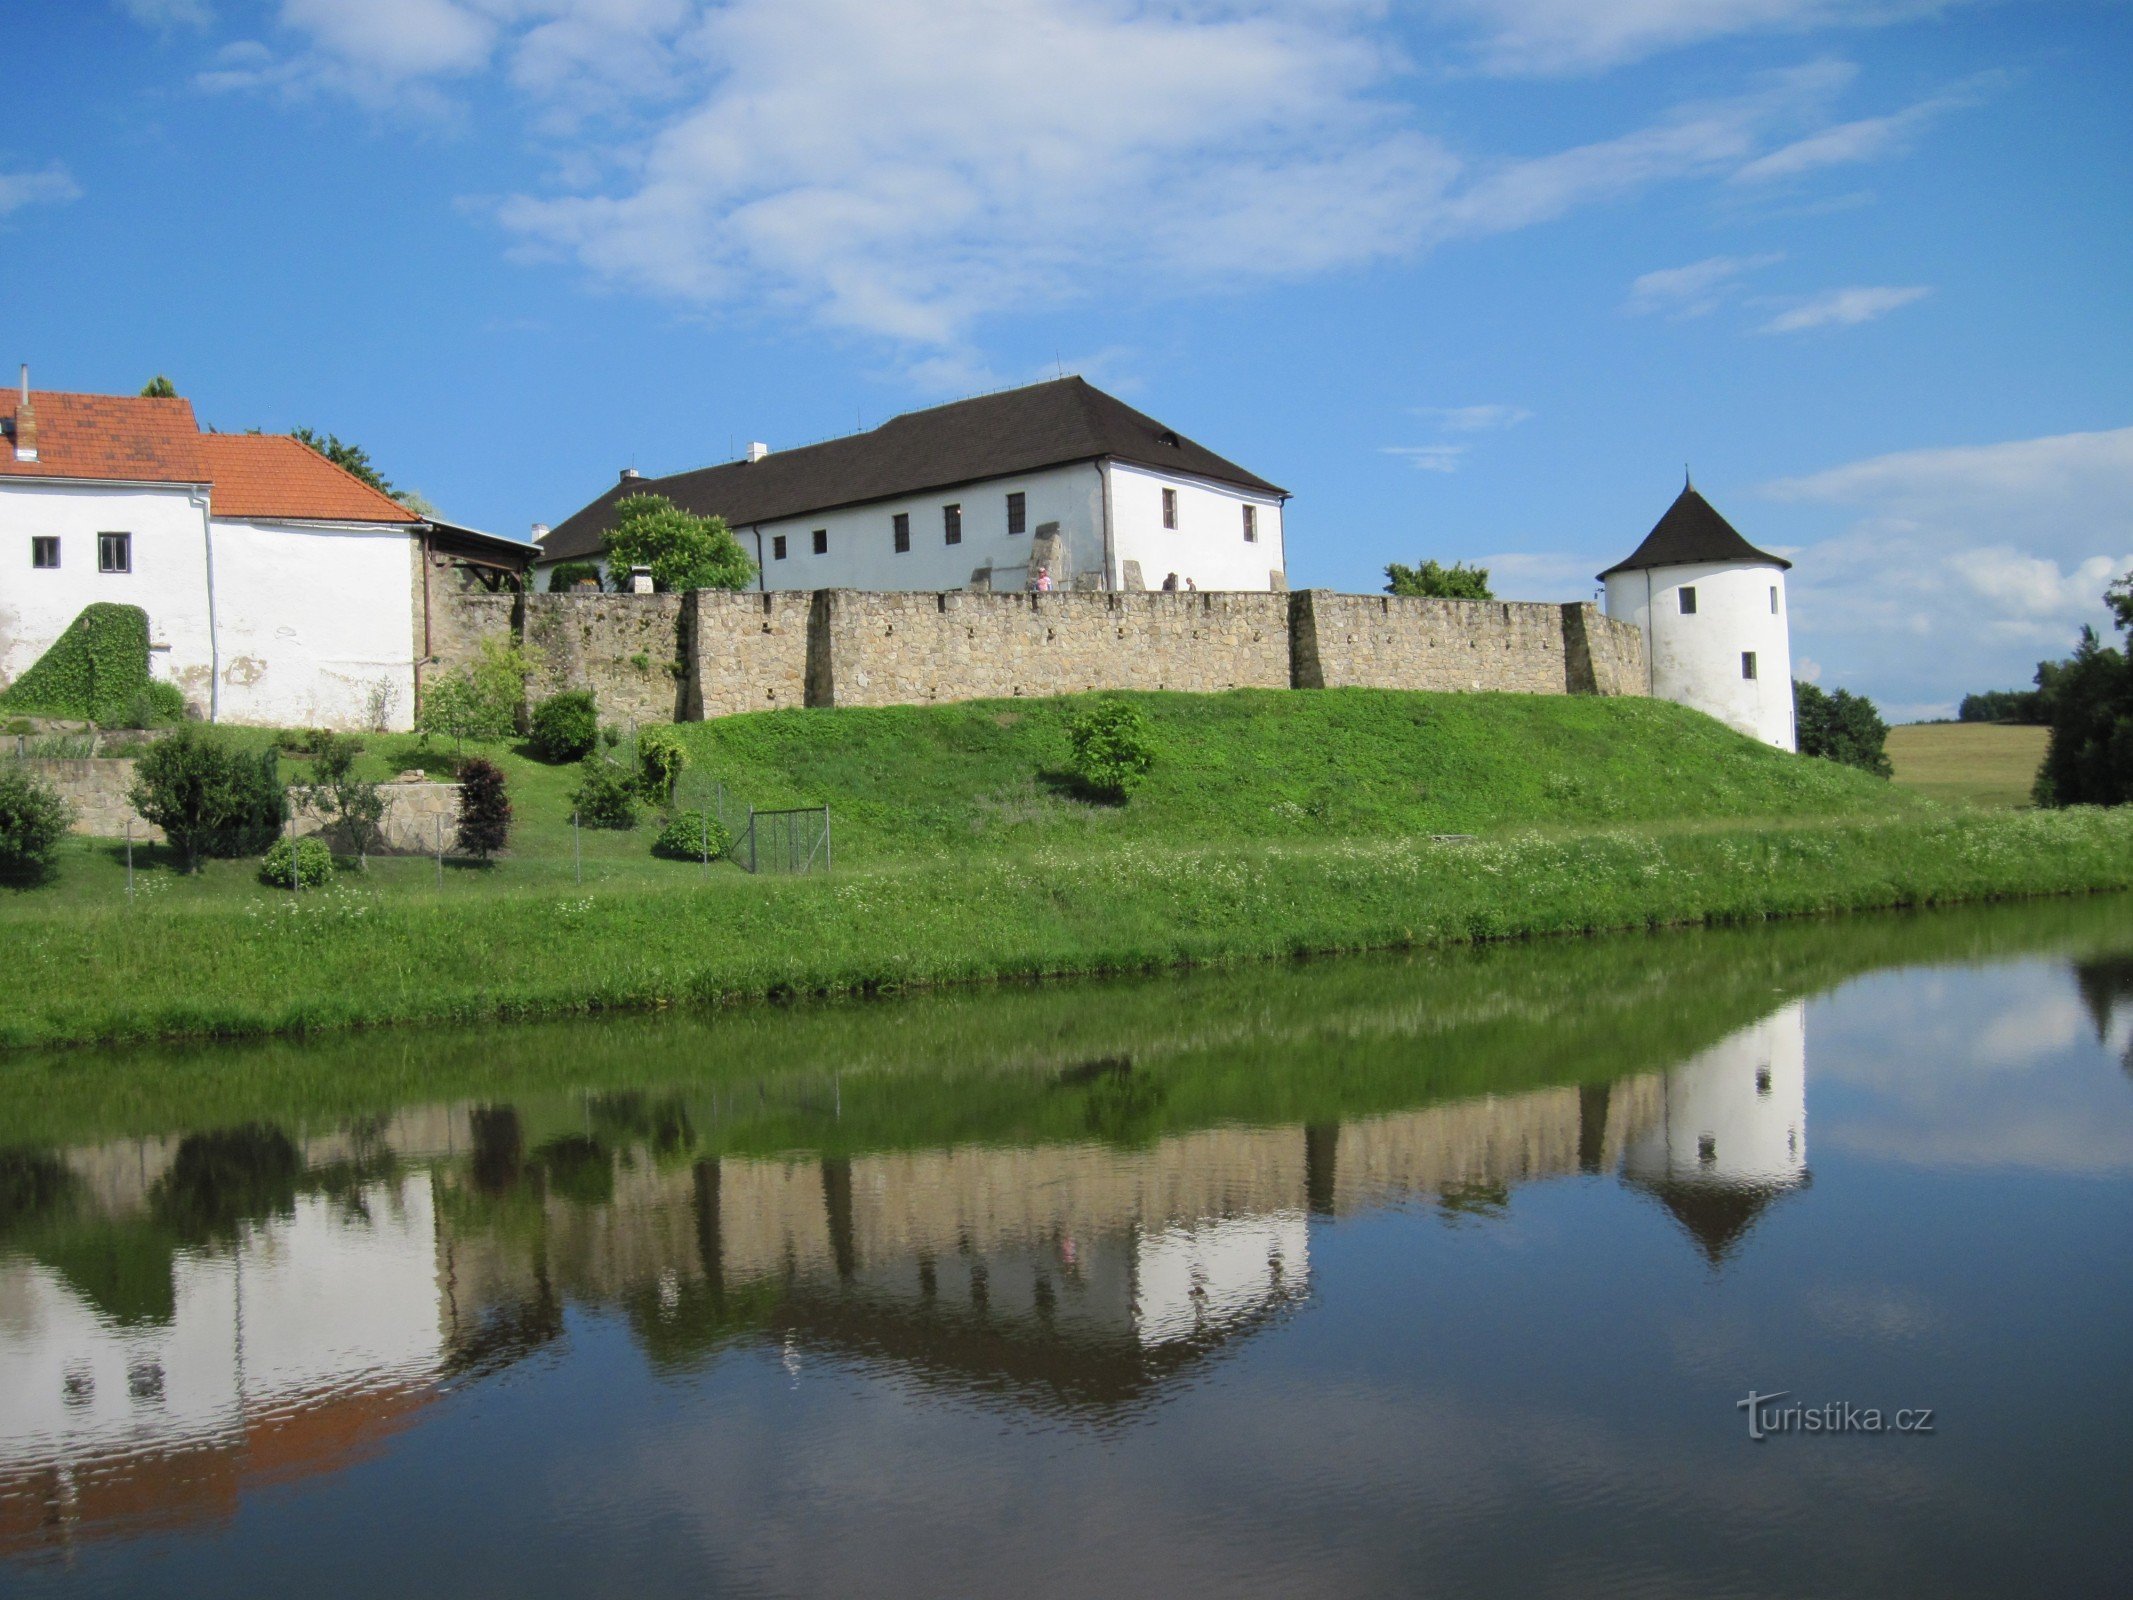 Žumberk, az útvonal egyik úti célja